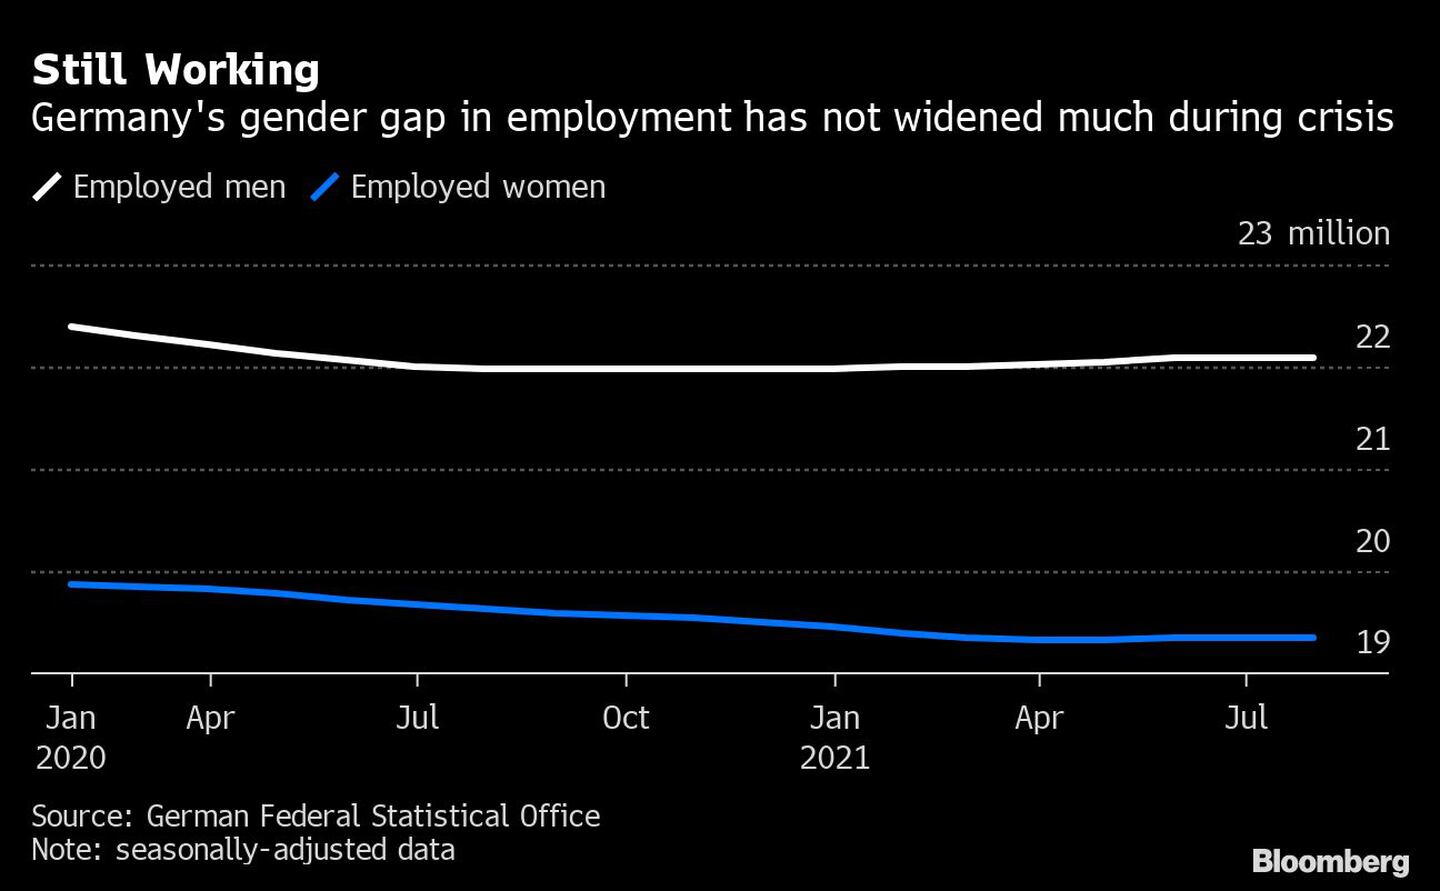 Todavía trabajando 
Las diferencias de género en el empleo en Alemania no han aumentado mucho durante la crisis 
Blanco: hombres con empleo
Azul: mujeres empleadasdfd